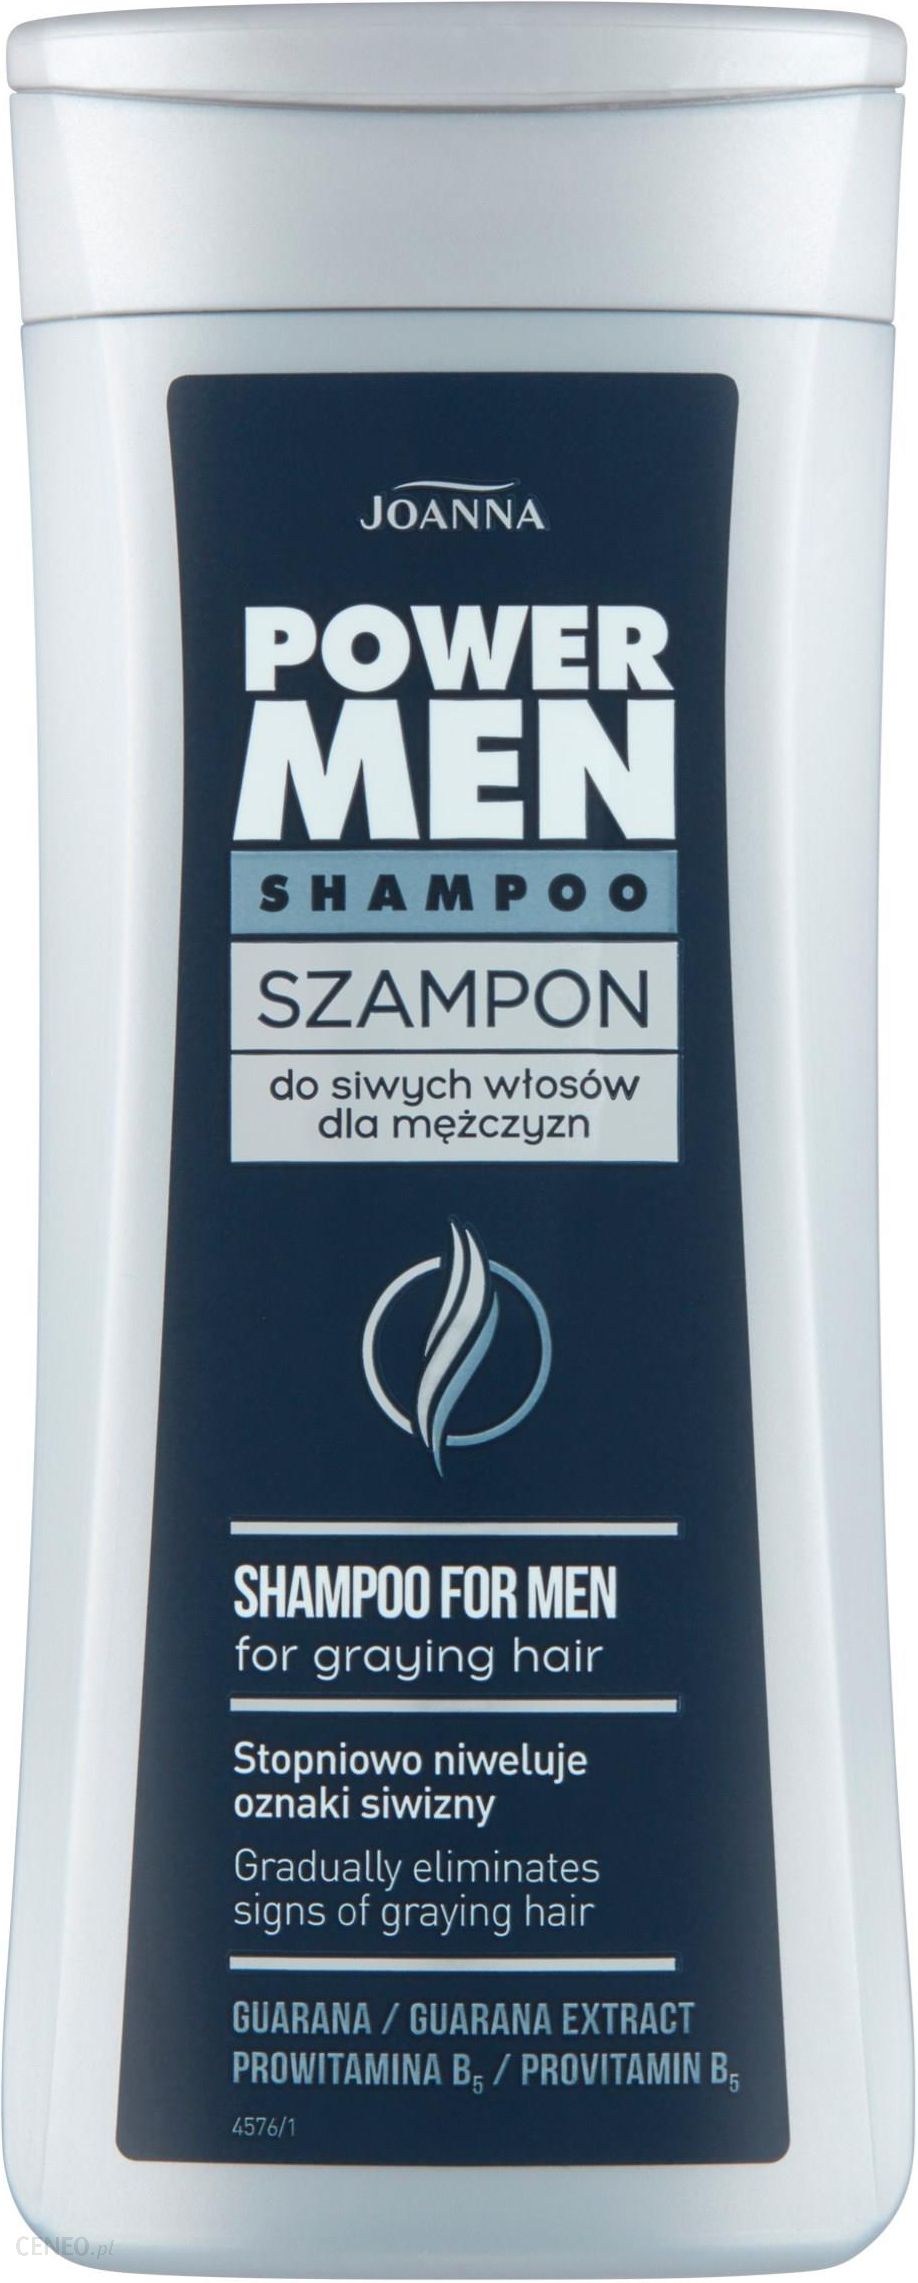 szampon do włosów joanna dla mezszczyzn